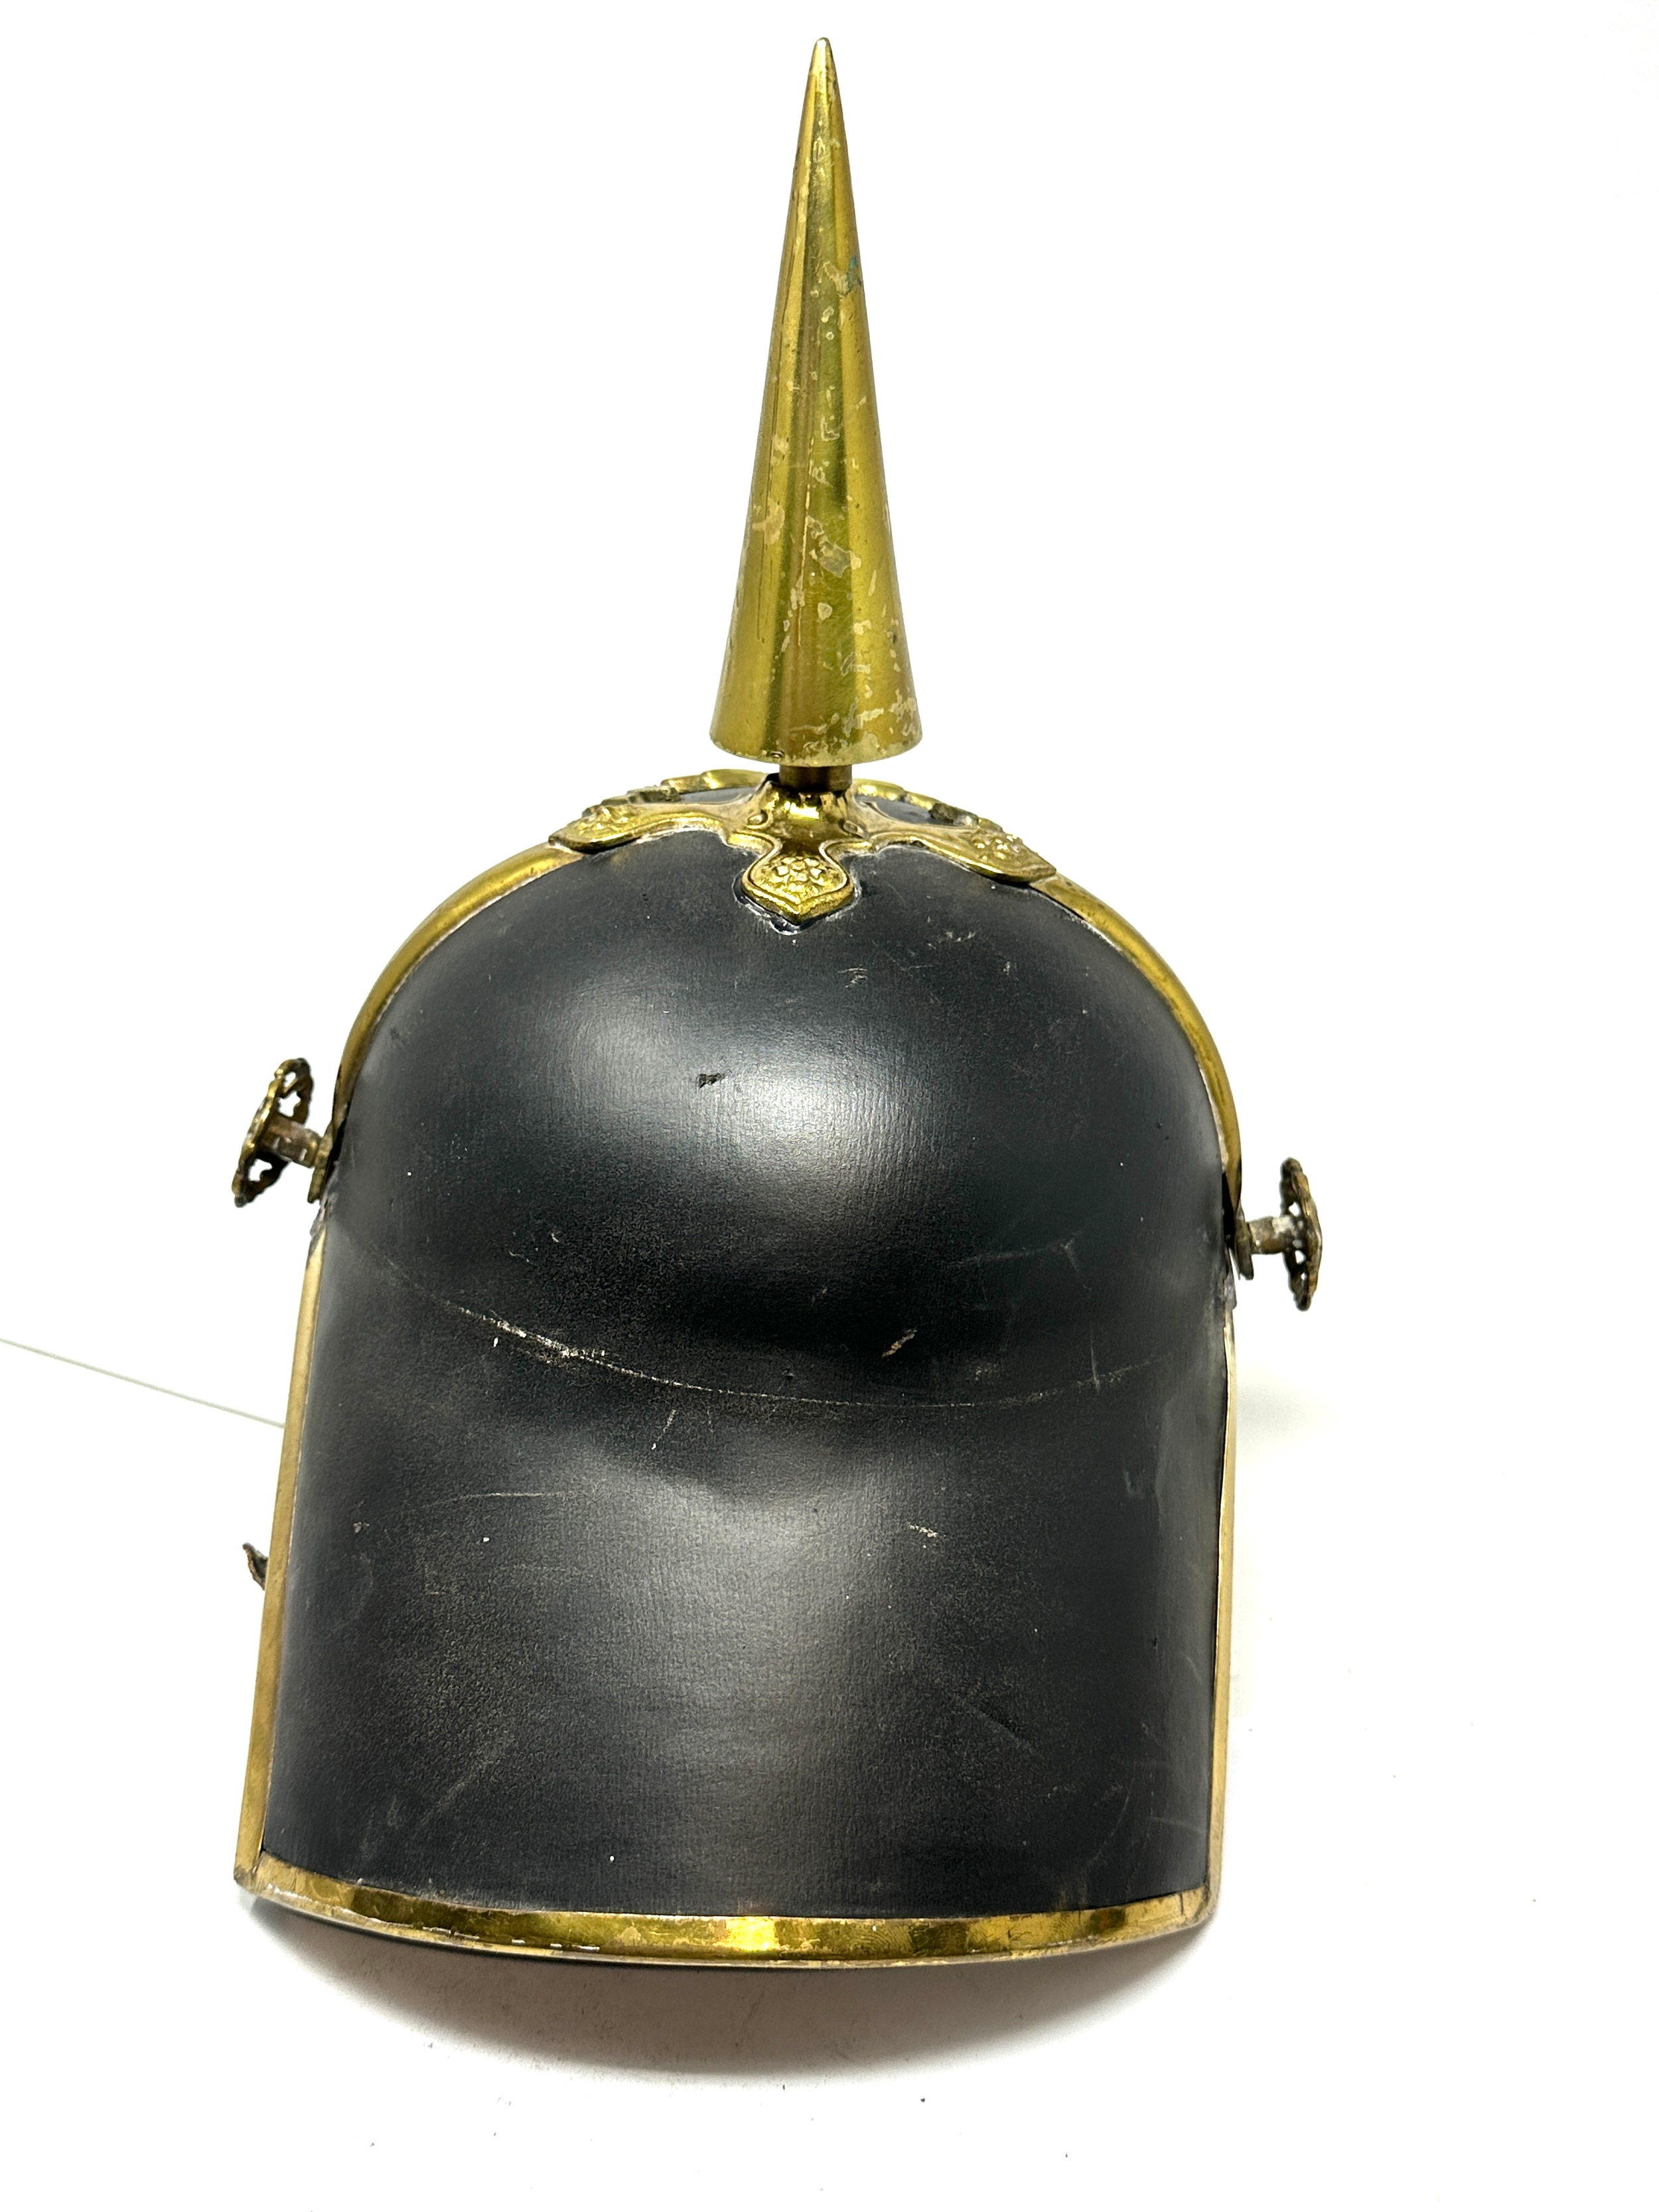 Black Leather Prussian Helmet German Pickelhaube Long Spiked Helmet - Image 5 of 5